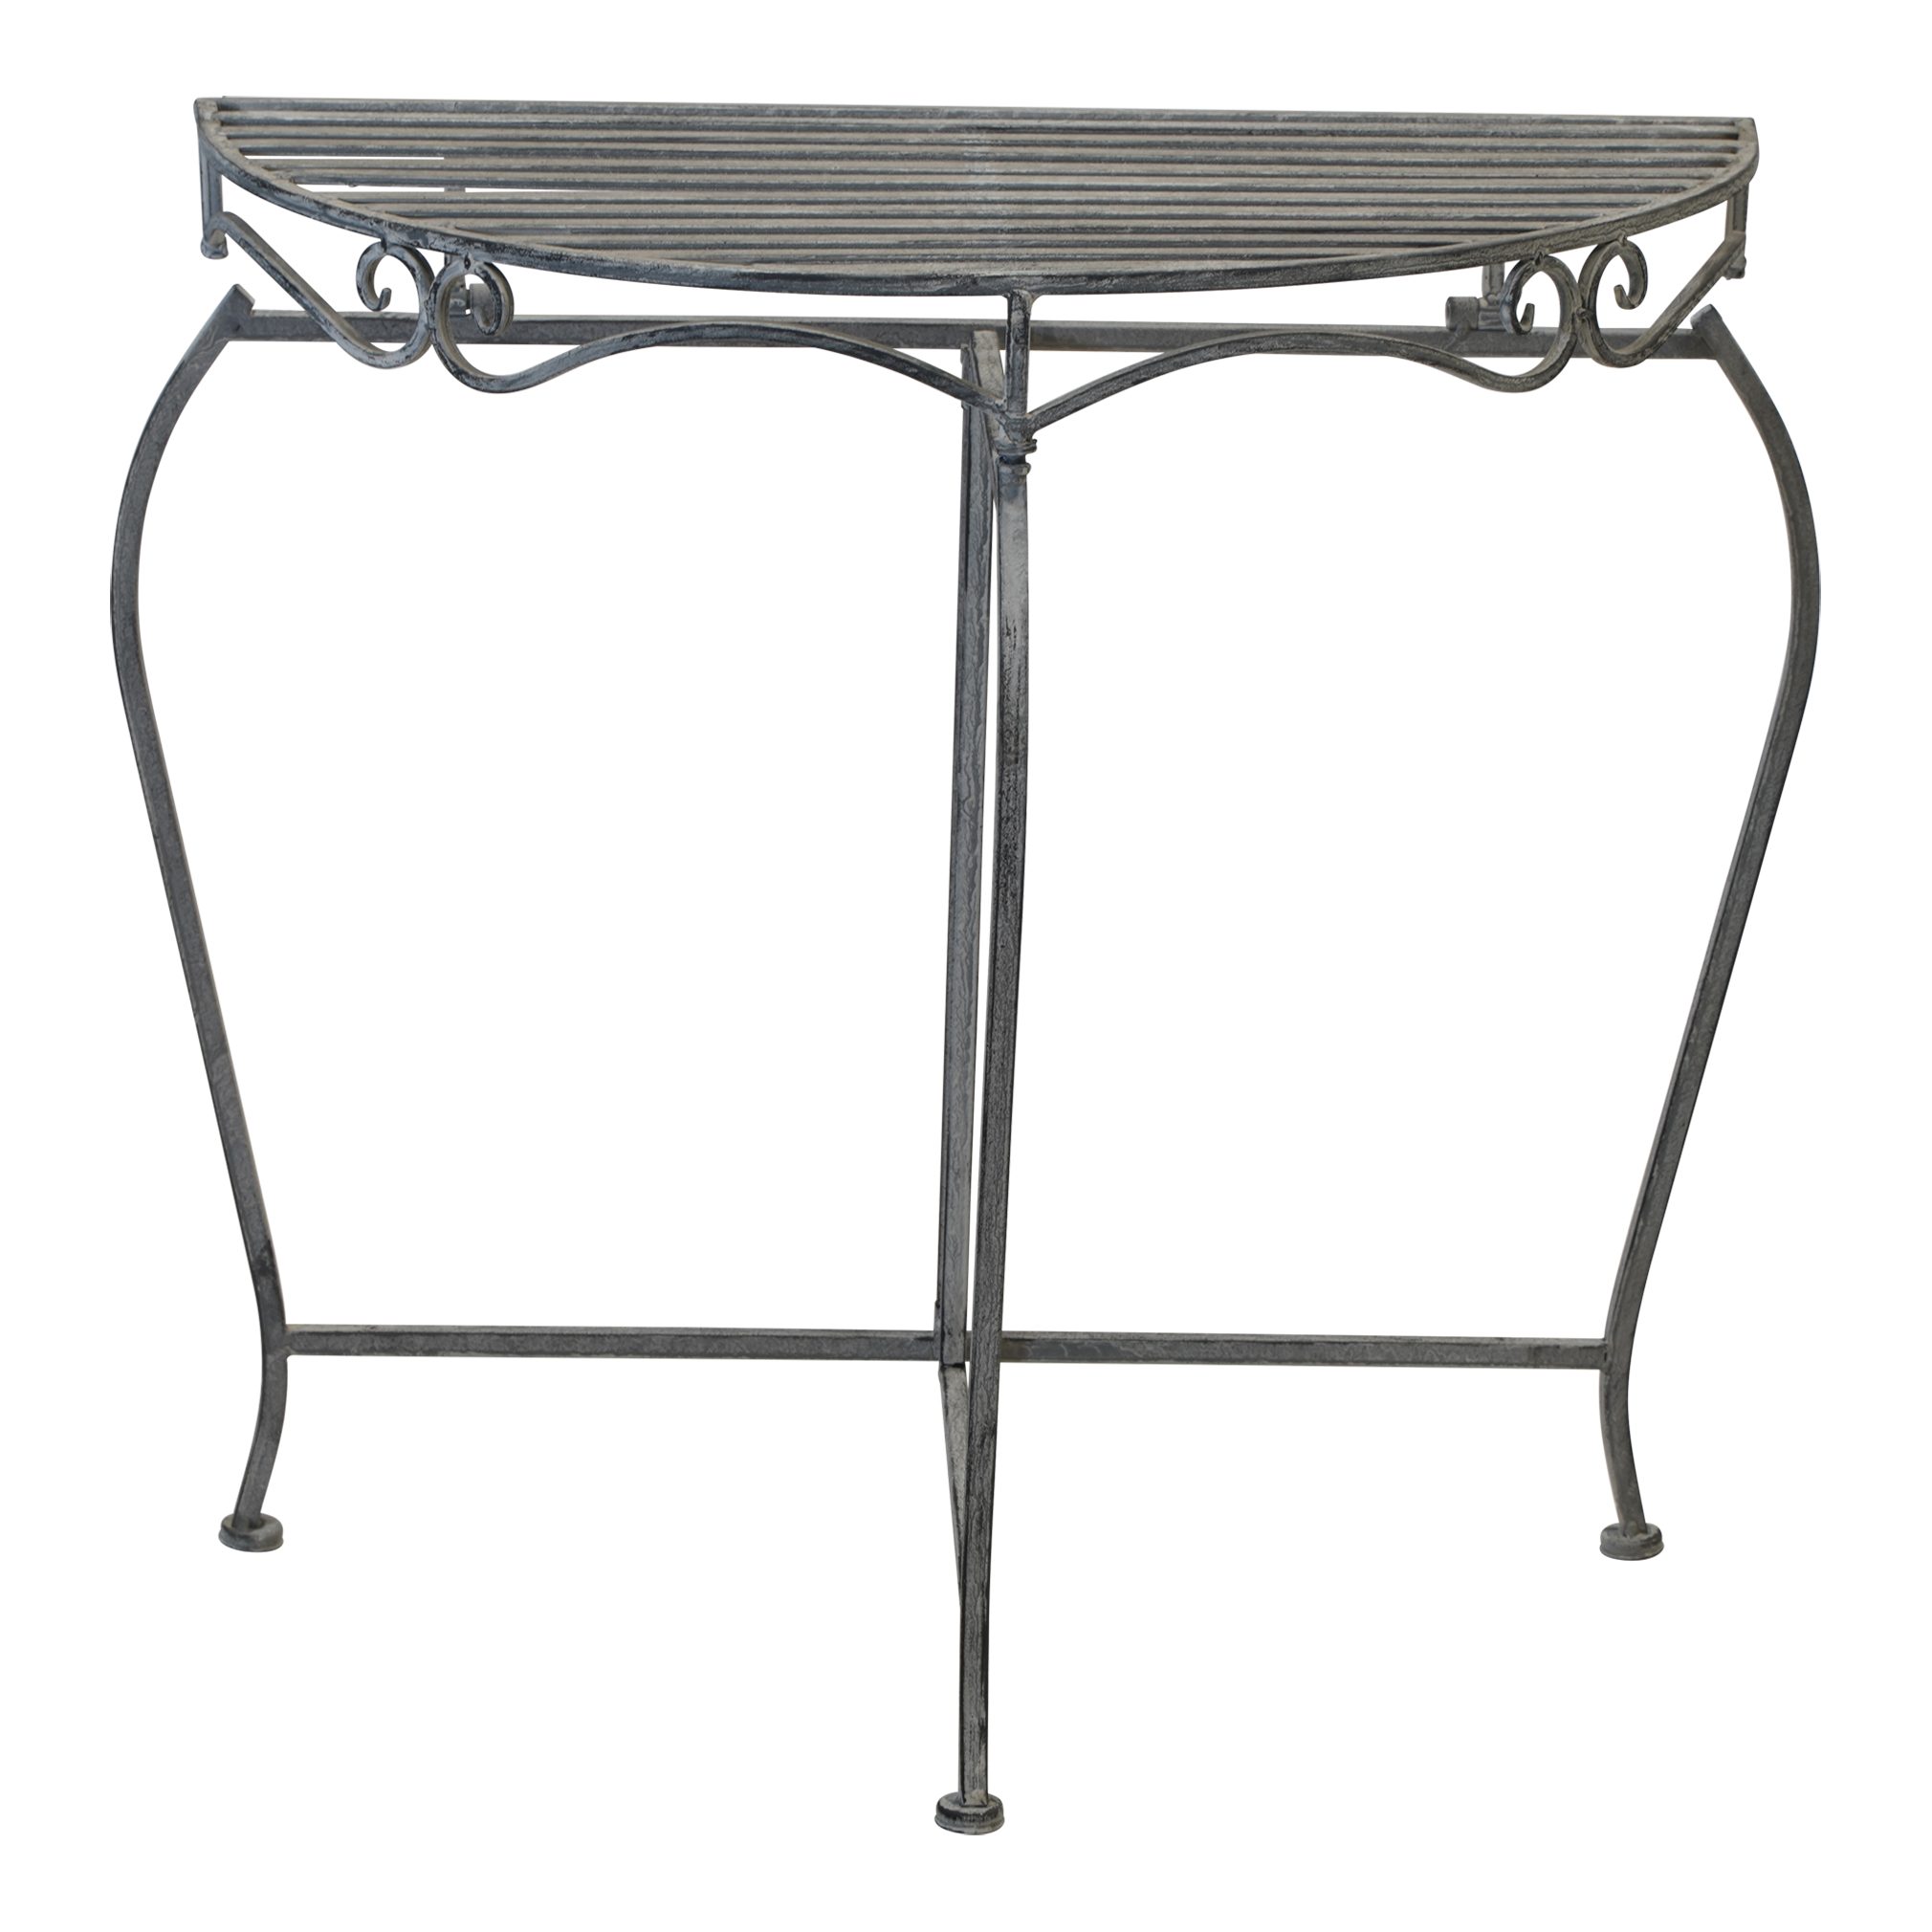 Beistelltisch Gartentisch Lesli Living 75x37x74cm halbrund Beistelltisch Tisch Metall grau